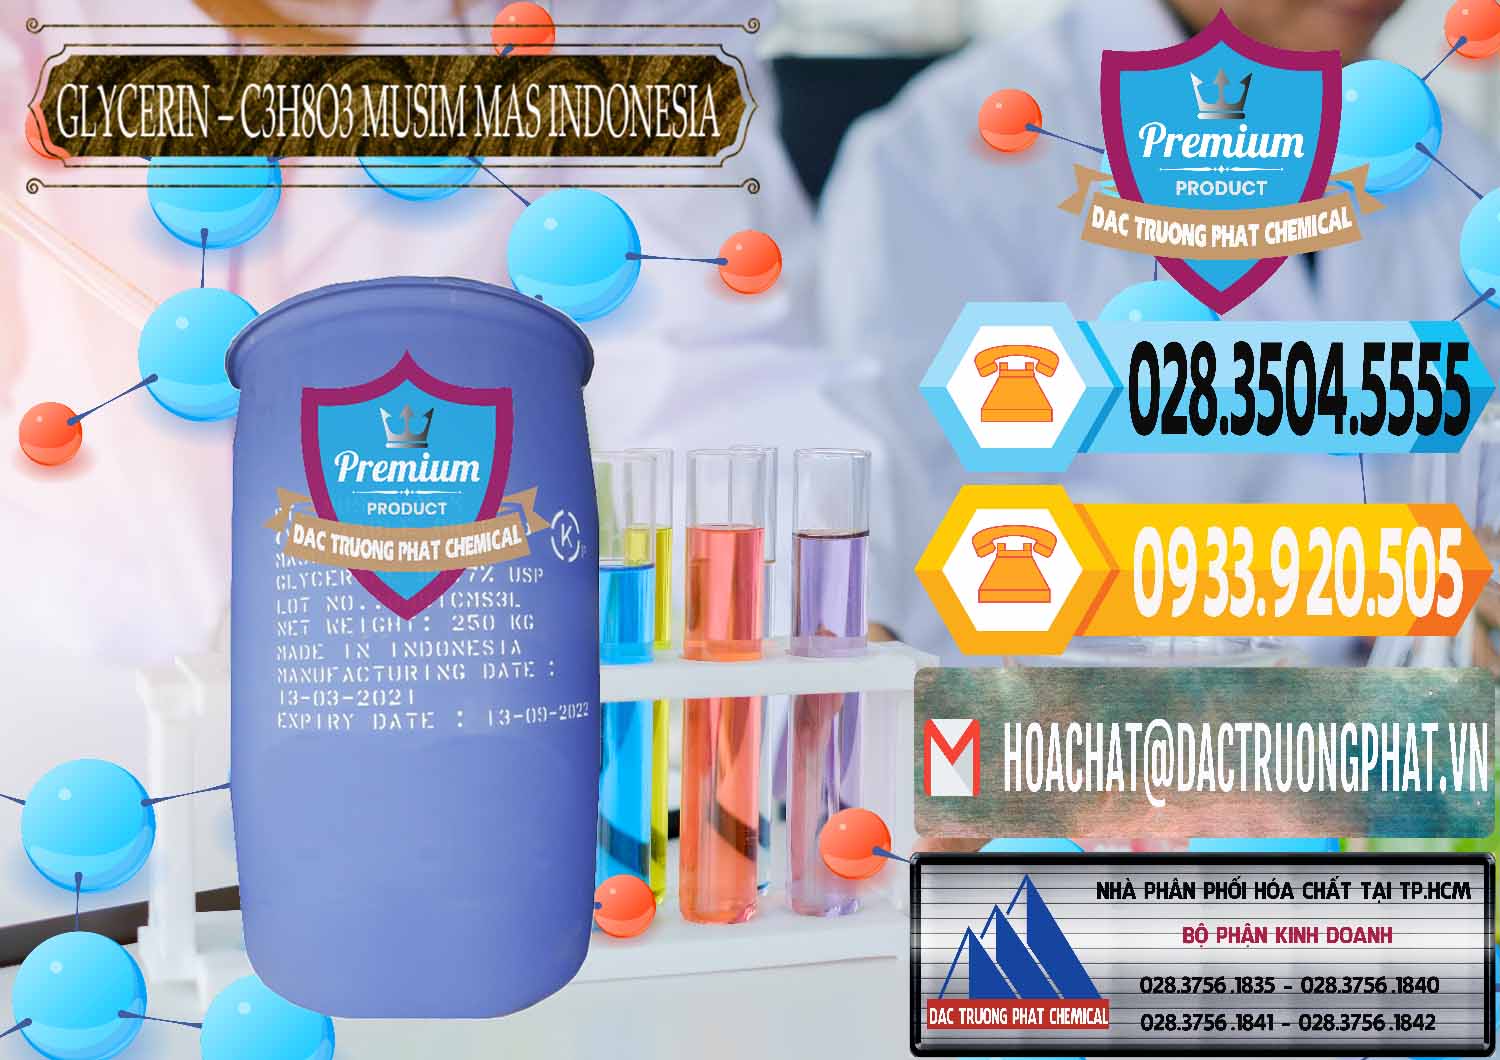 Công ty bán _ cung ứng Glycerin – C3H8O3 99.7% Musim Mas Indonesia - 0272 - Nơi chuyên phân phối ( nhập khẩu ) hóa chất tại TP.HCM - hoachattayrua.net